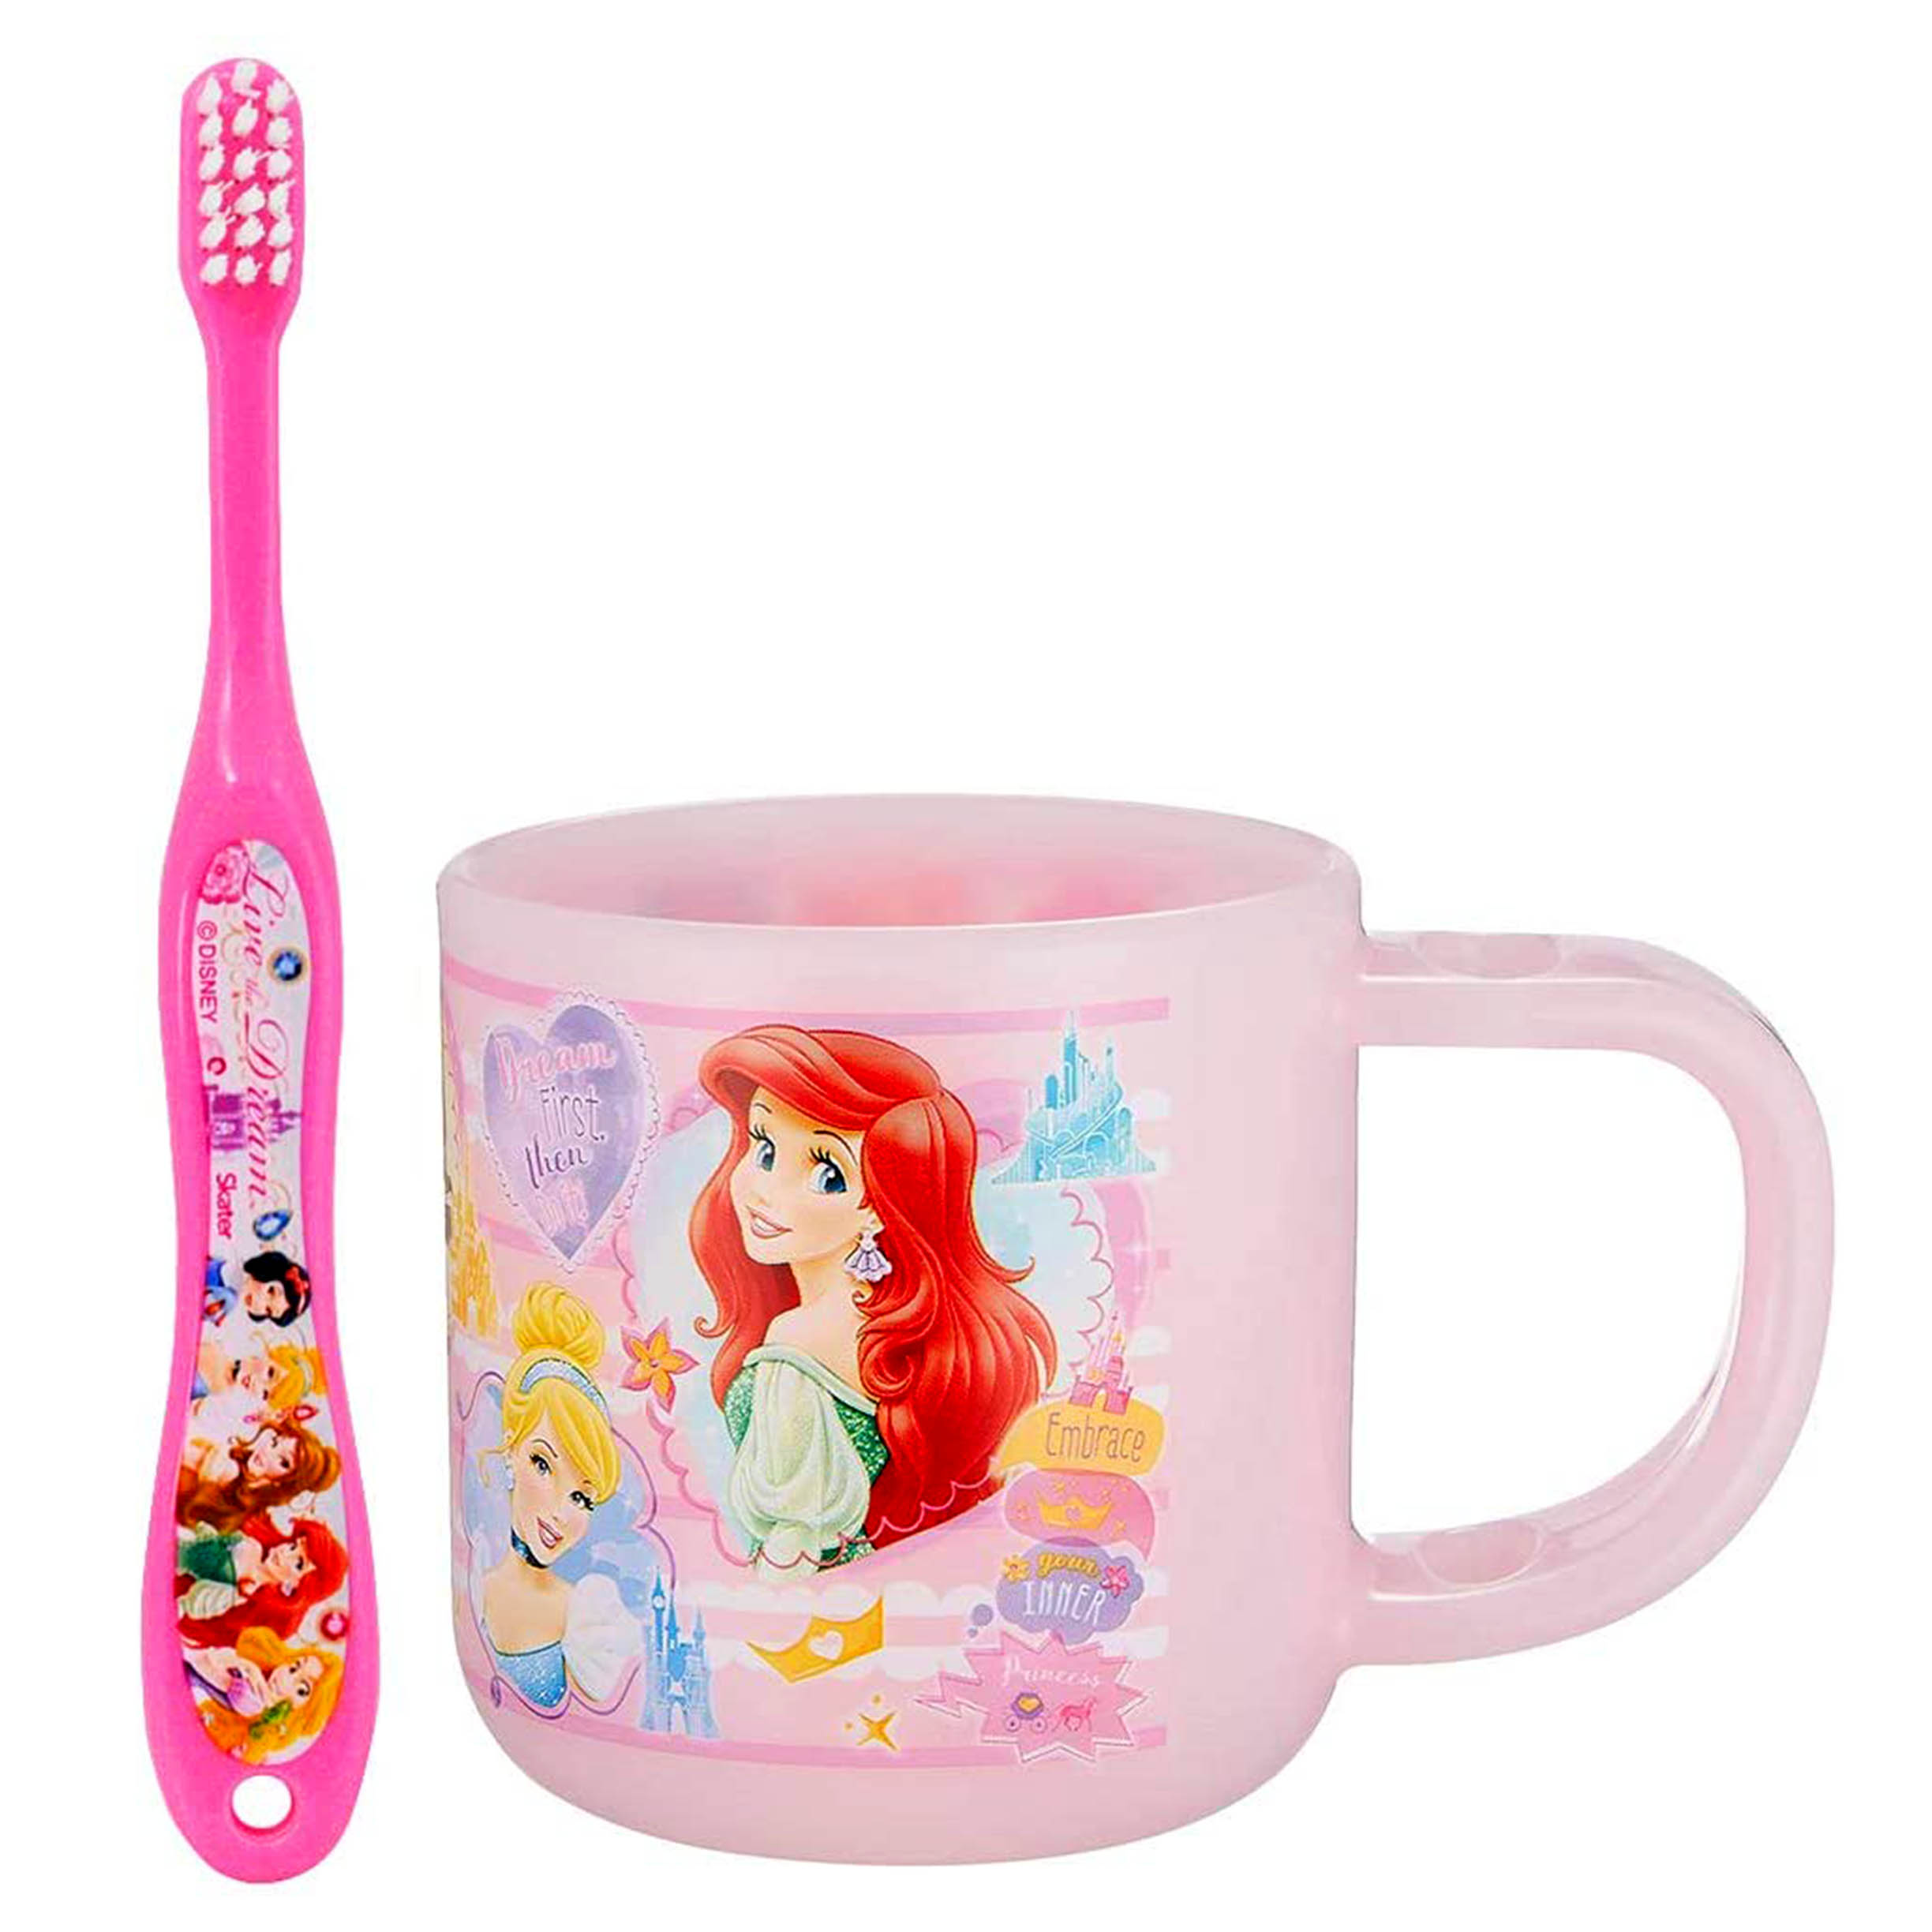 塑膠牙刷杯組 180ml-3~5歲 SKATER 乳齒期 小美人魚 迪士尼 DISNEY 日本進口正版授權